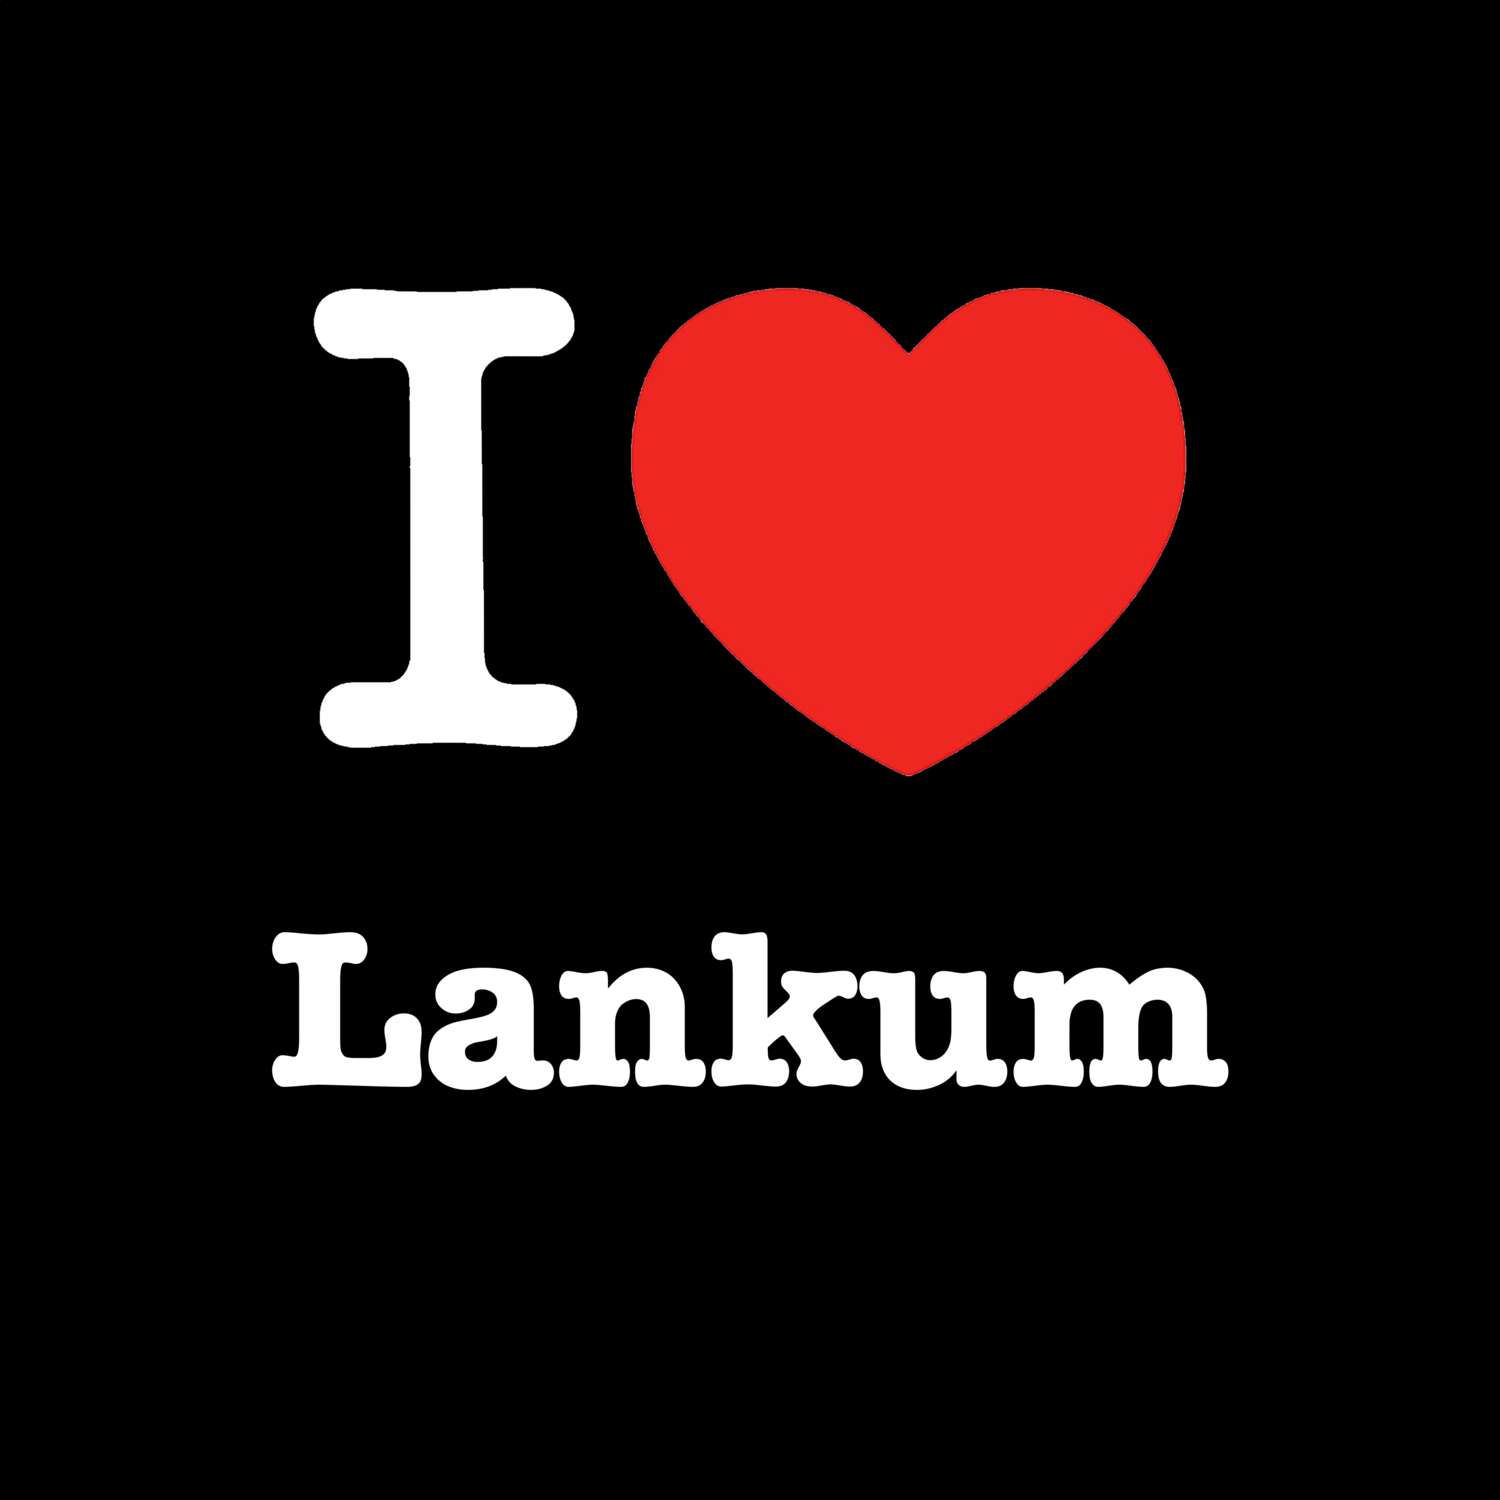 Lankum T-Shirt »I love«